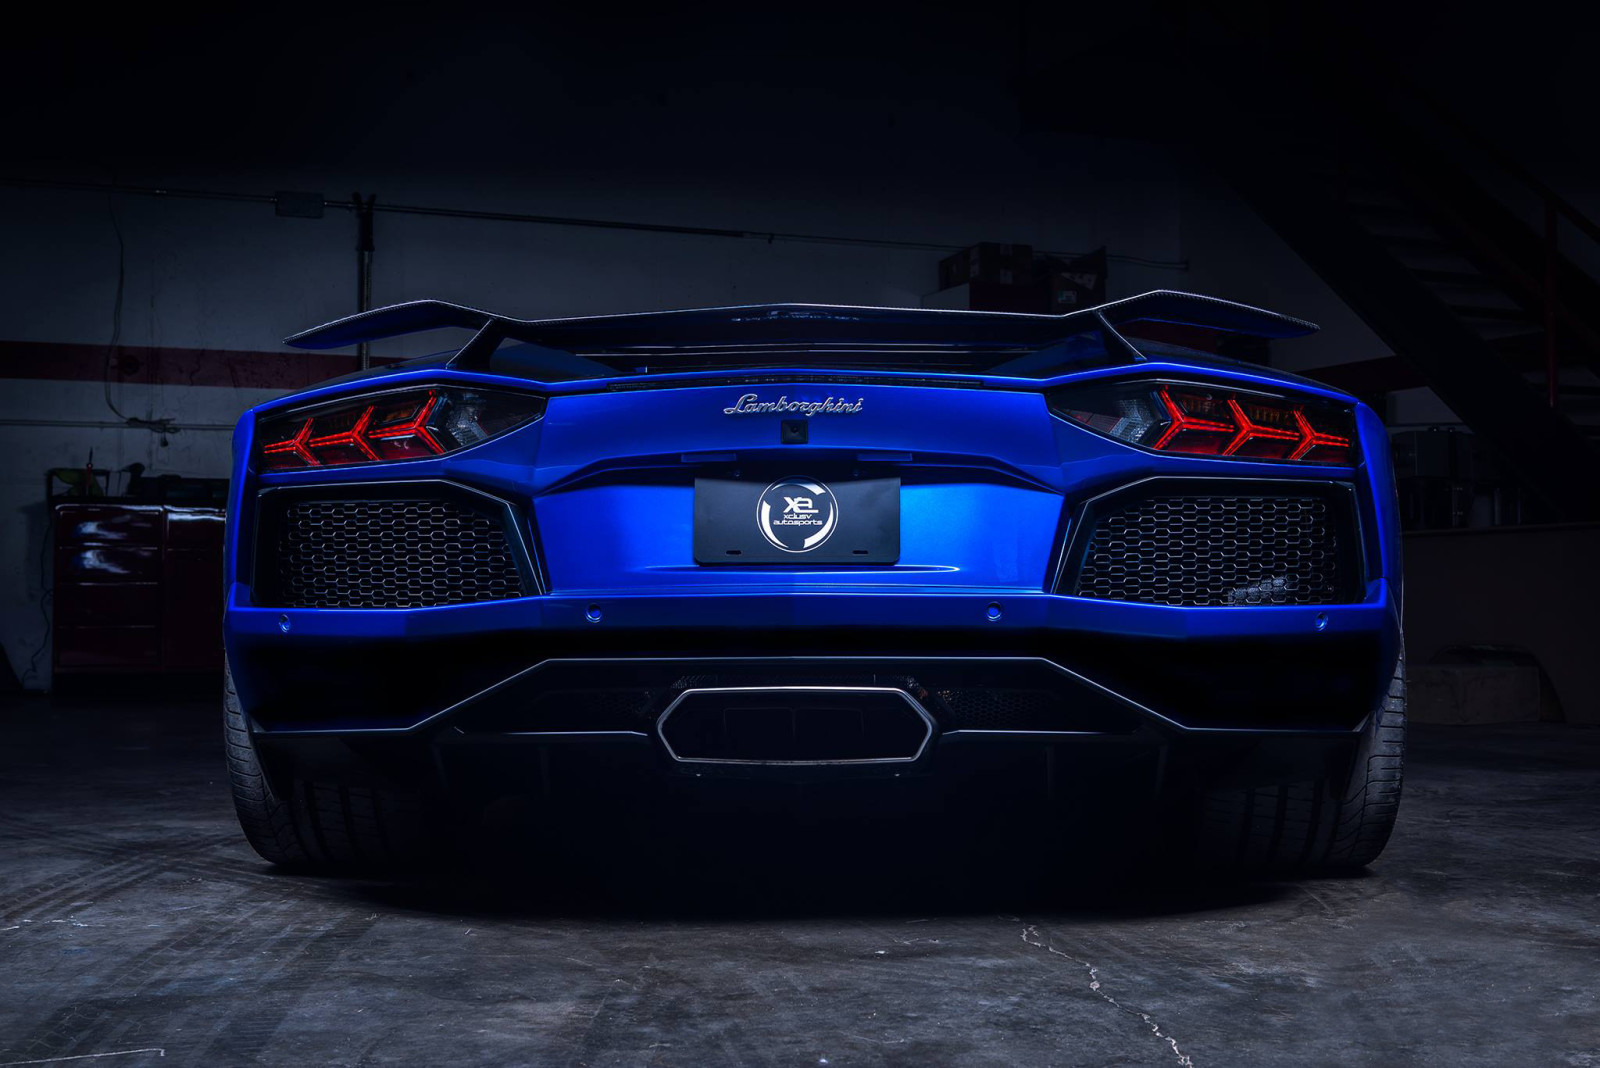 สีน้ำเงิน, Lamborghini, supercar, Aventador, ด้านหลัง, LP700-4, ผู้ทำให้เสื่อมเสีย, Matte